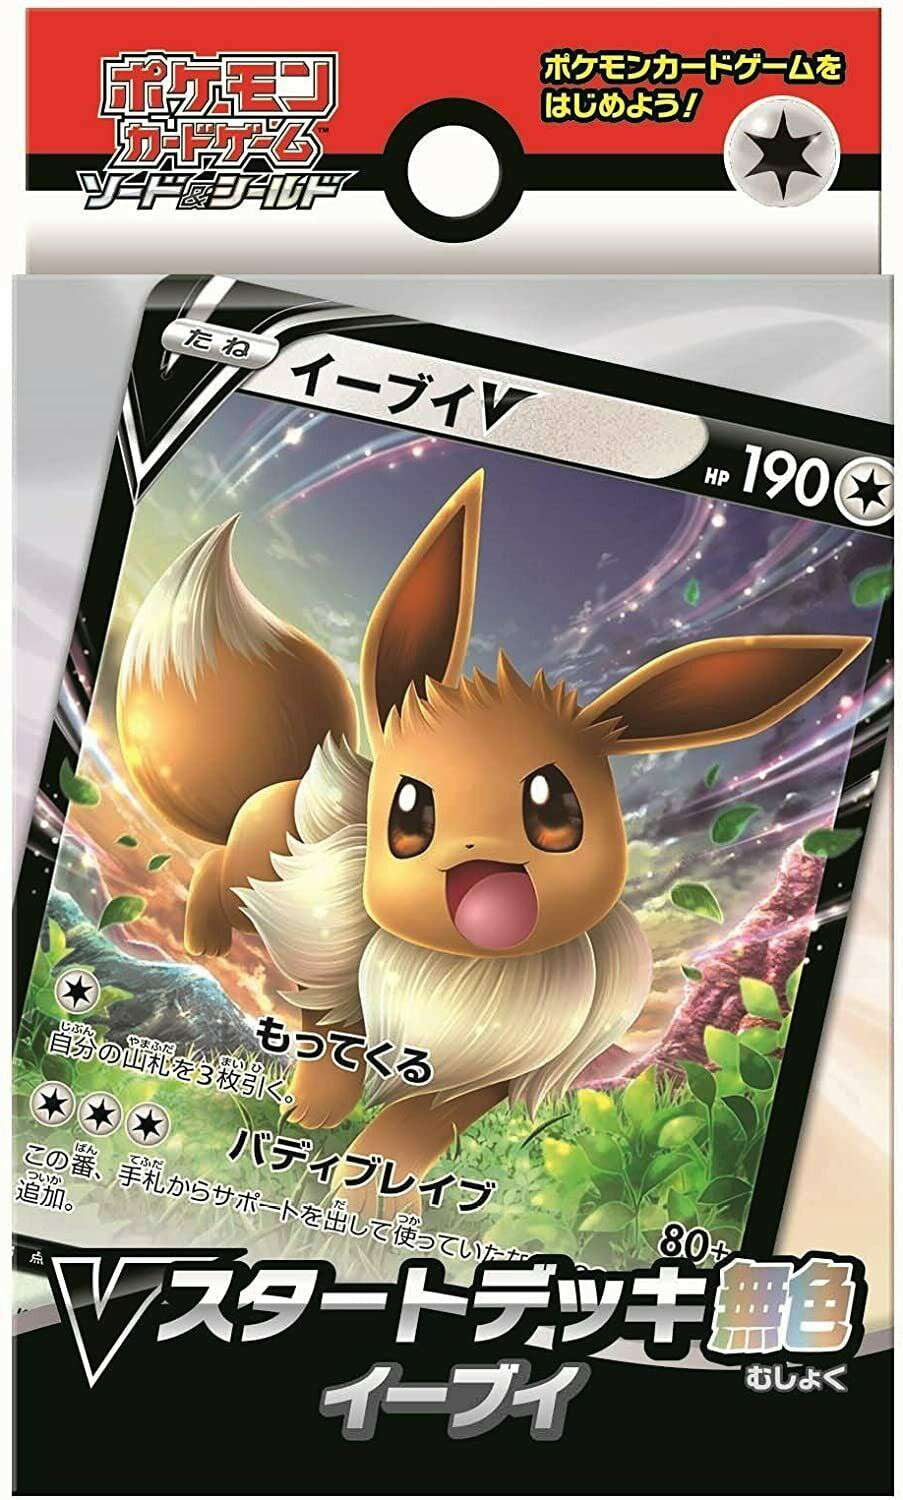 Brand New Eevee V Gold Basic Pokemon Card